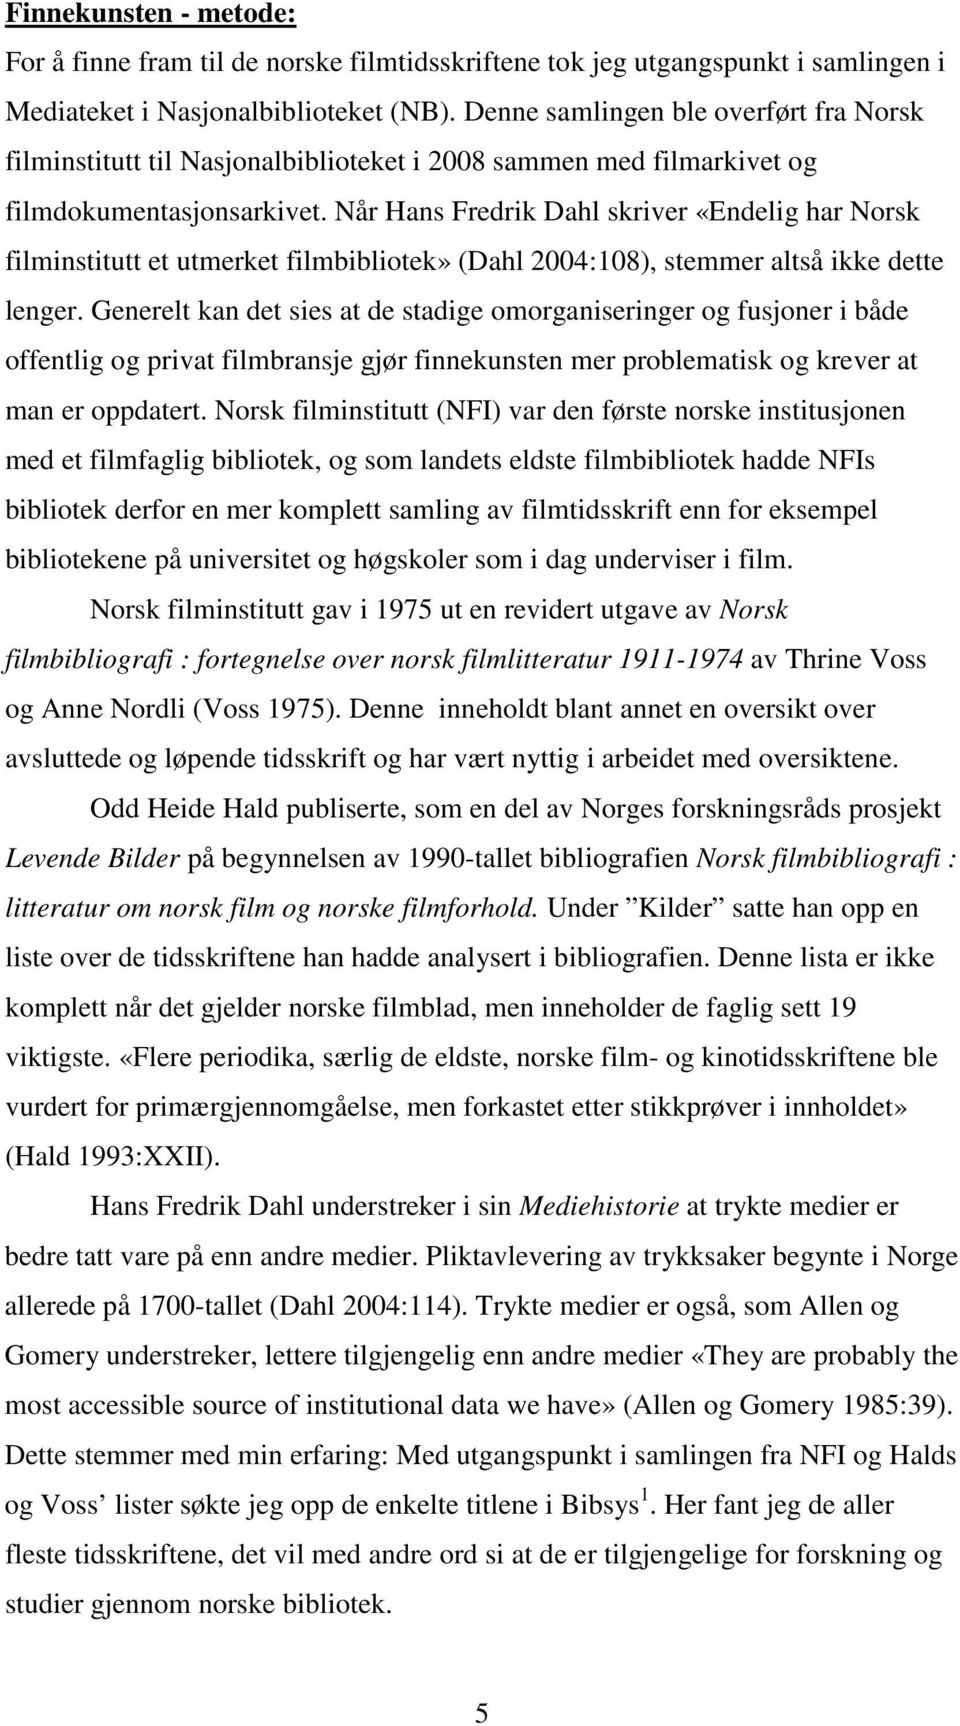 Når Hans Fredrik Dahl skriver «Endelig har Norsk filminstitutt et utmerket filmbibliotek» (Dahl 2004:108), stemmer altså ikke dette lenger.